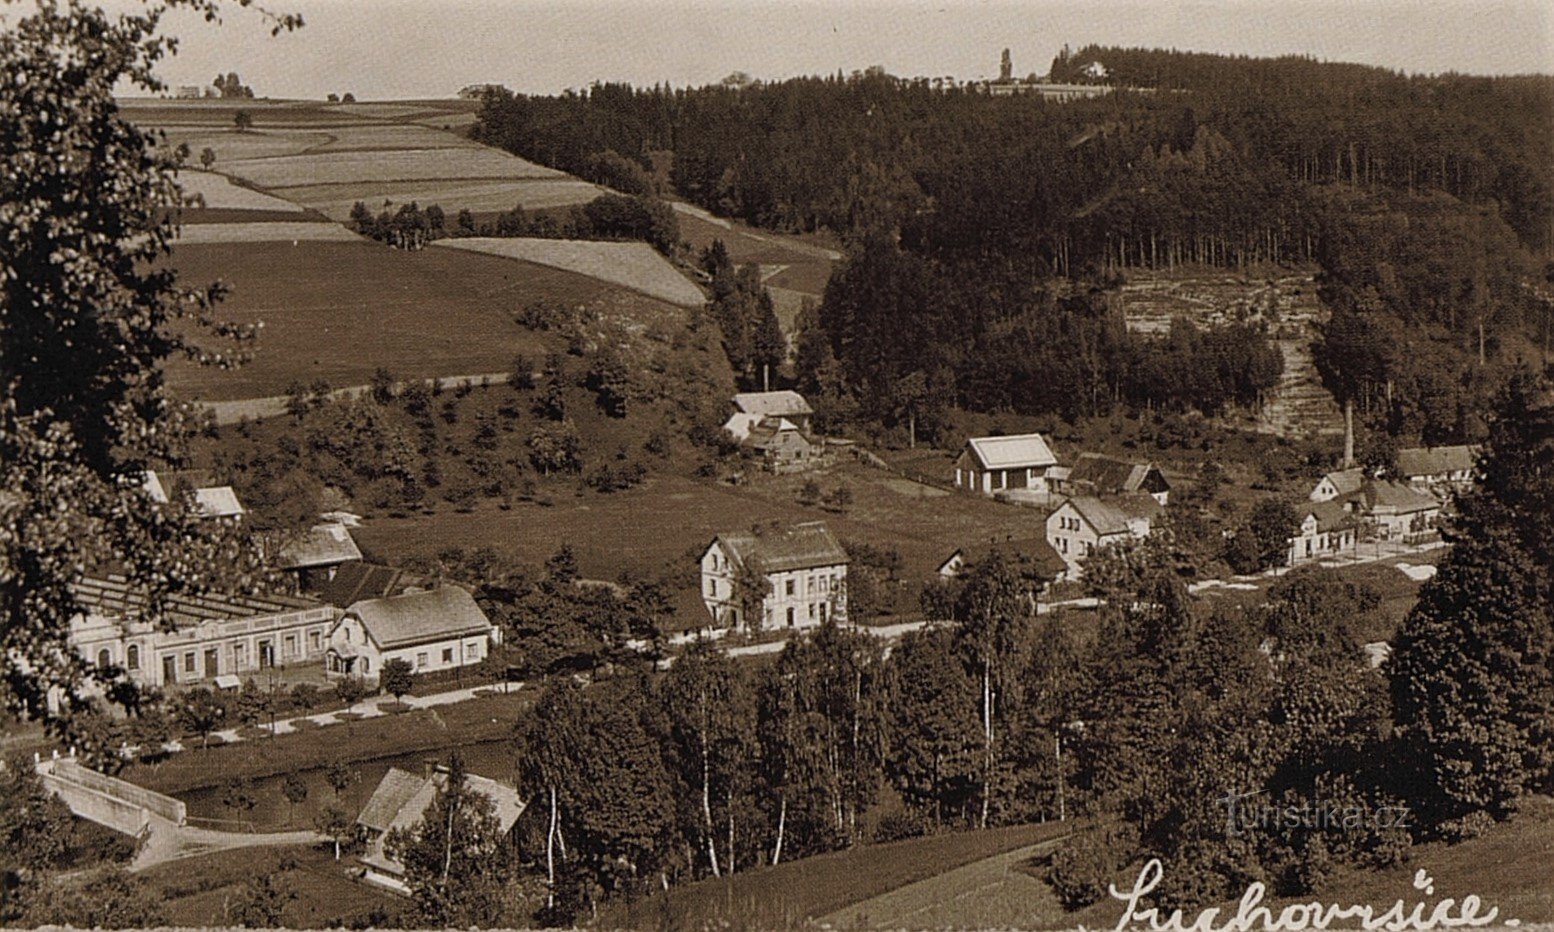 30 年代初期明信片上的苏科夫尔希策景观